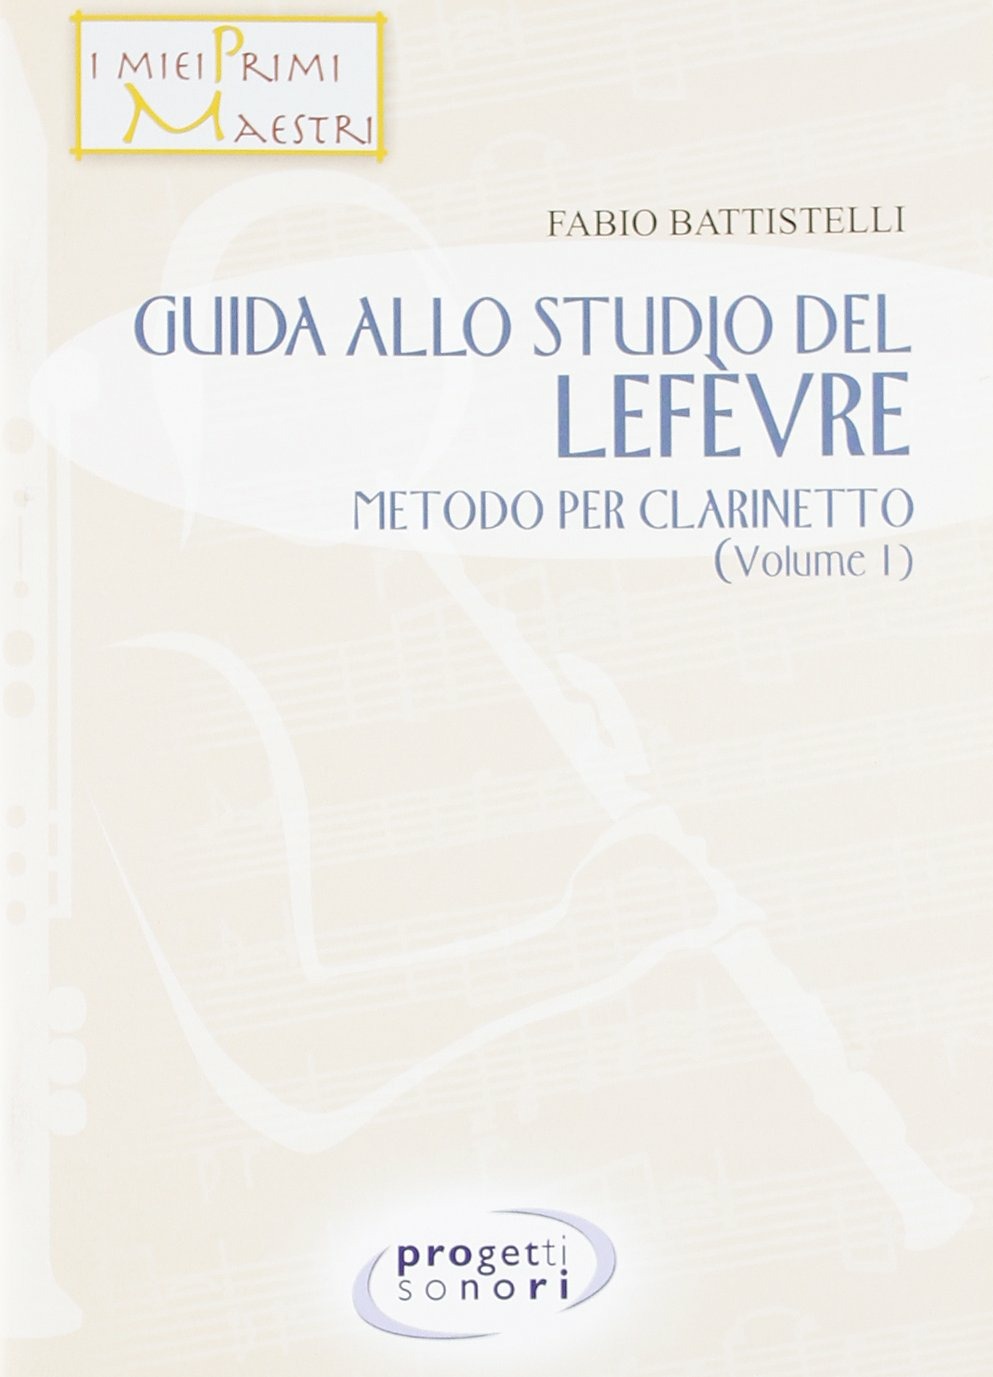 Libri Fabio Battistelli - Guida Allo Studio Del Lefevre. Metodo Per Clarinetto NUOVO SIGILLATO, EDIZIONE DEL 25/02/2008 SUBITO DISPONIBILE